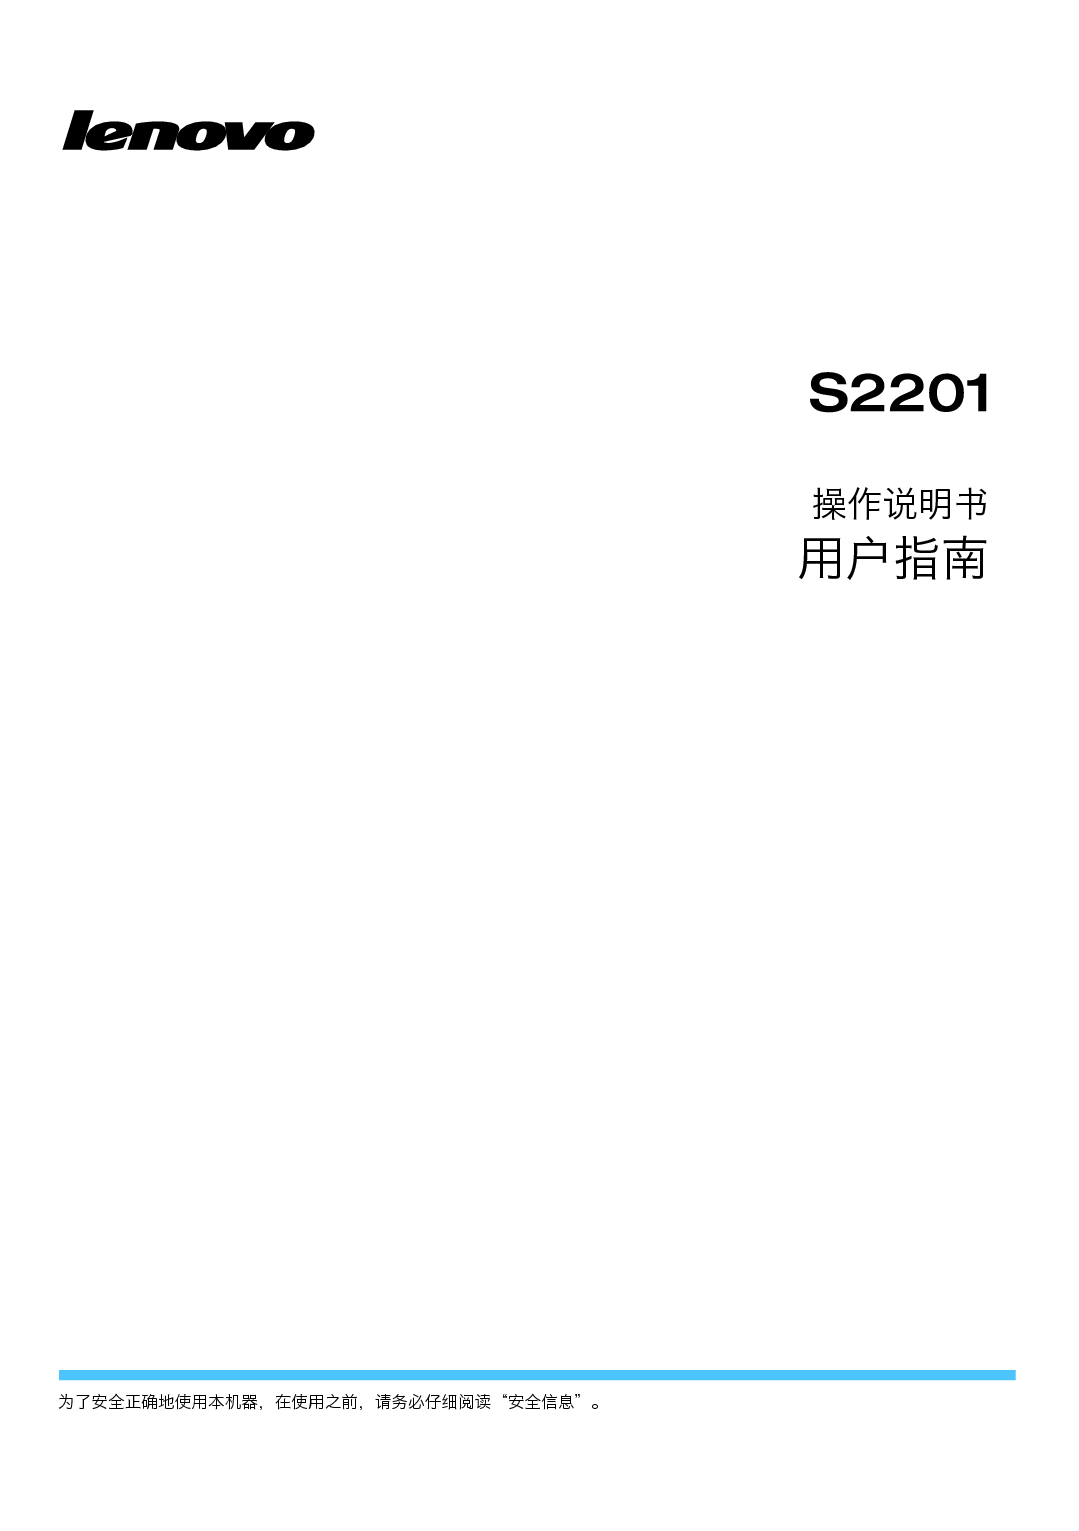 联想 Lenovo S2201 用户手册 封面